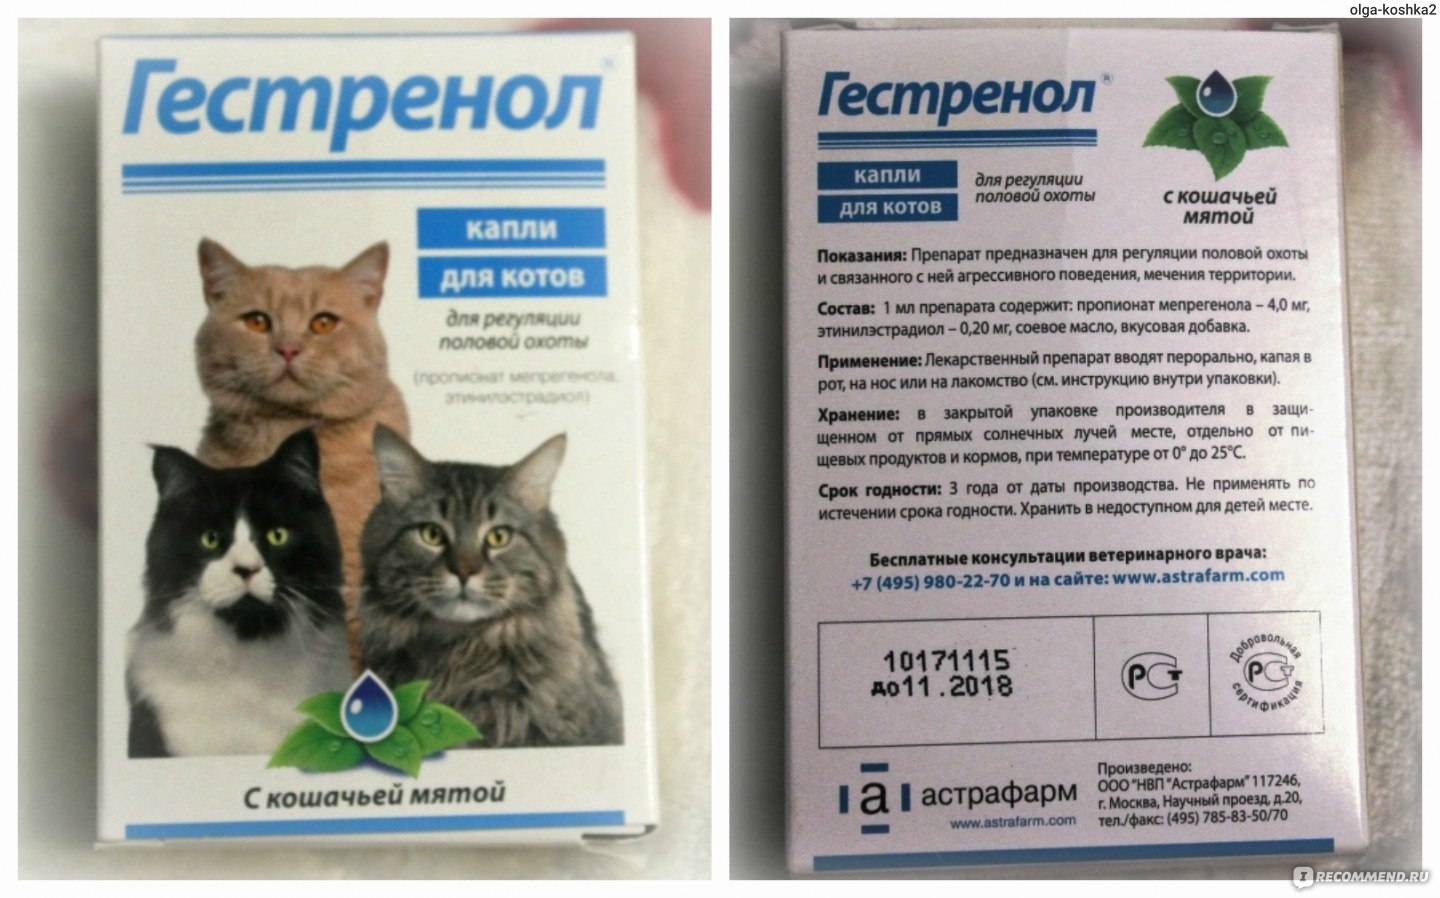 Лиарсин для кошек - инструкция к применению, дозировка - kotiko.ru